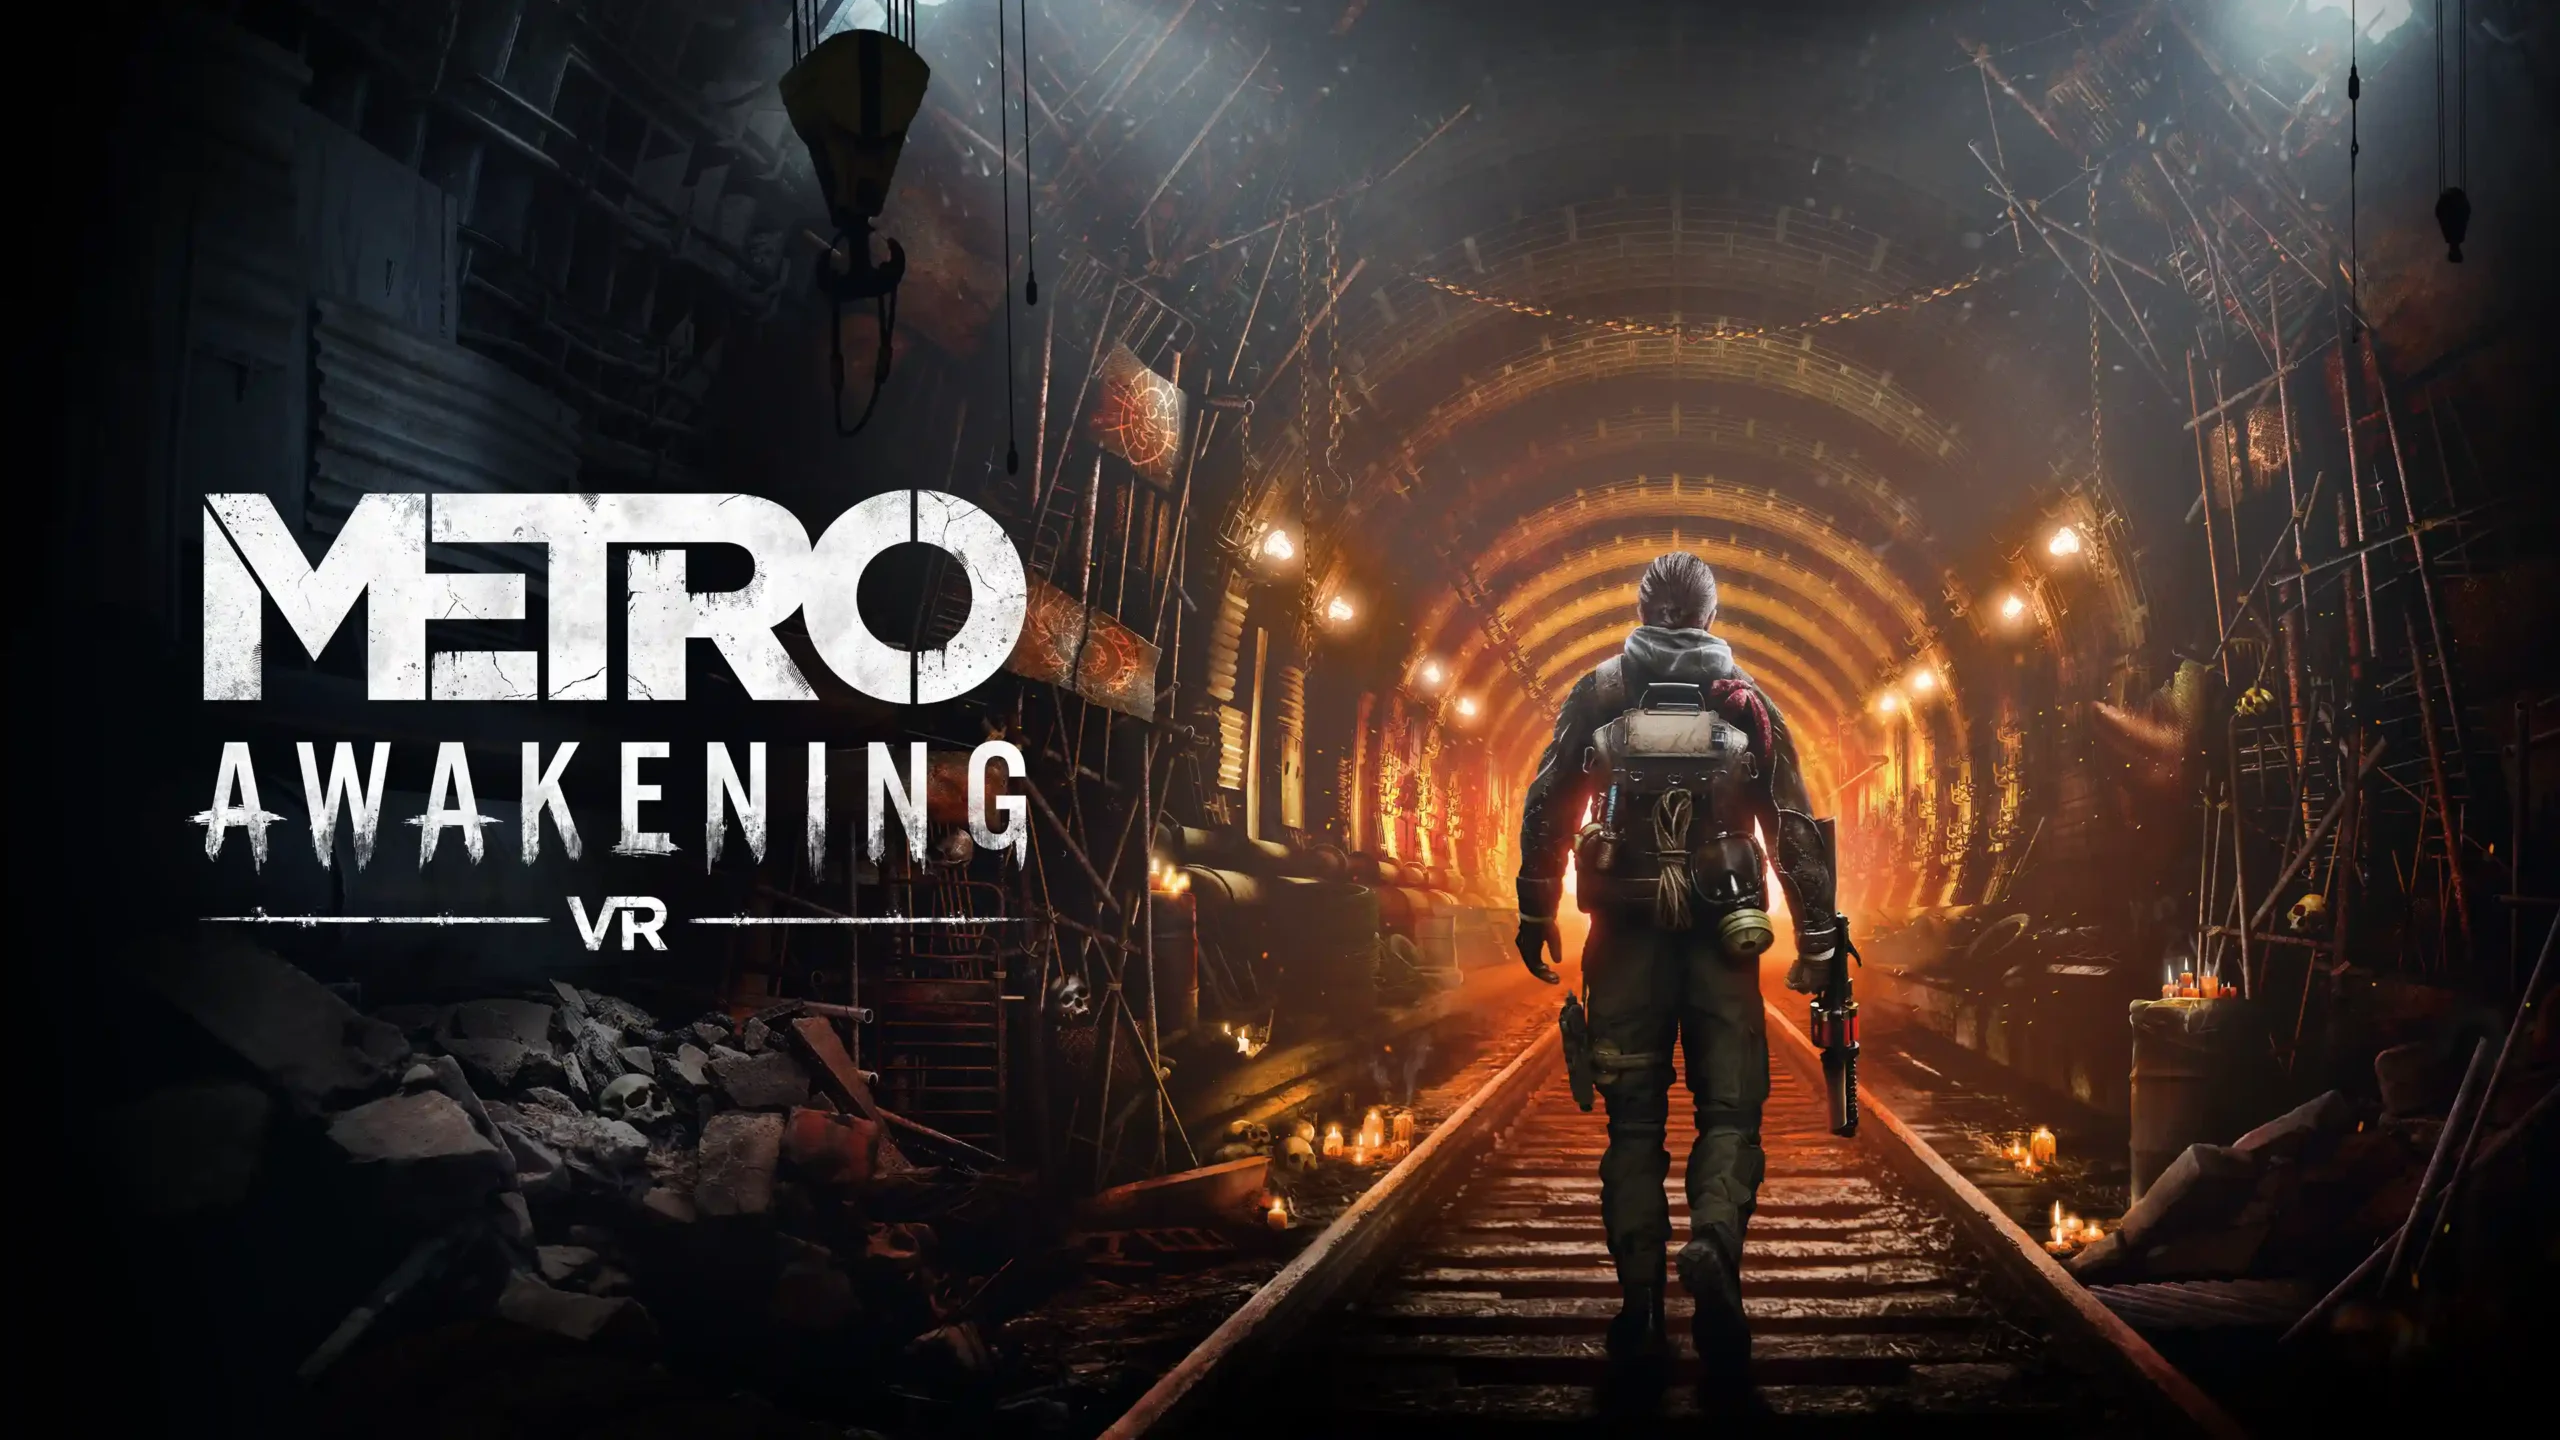 Le préquel de Metro intitulé Awakening débarquera sur PC et PS5 en VR